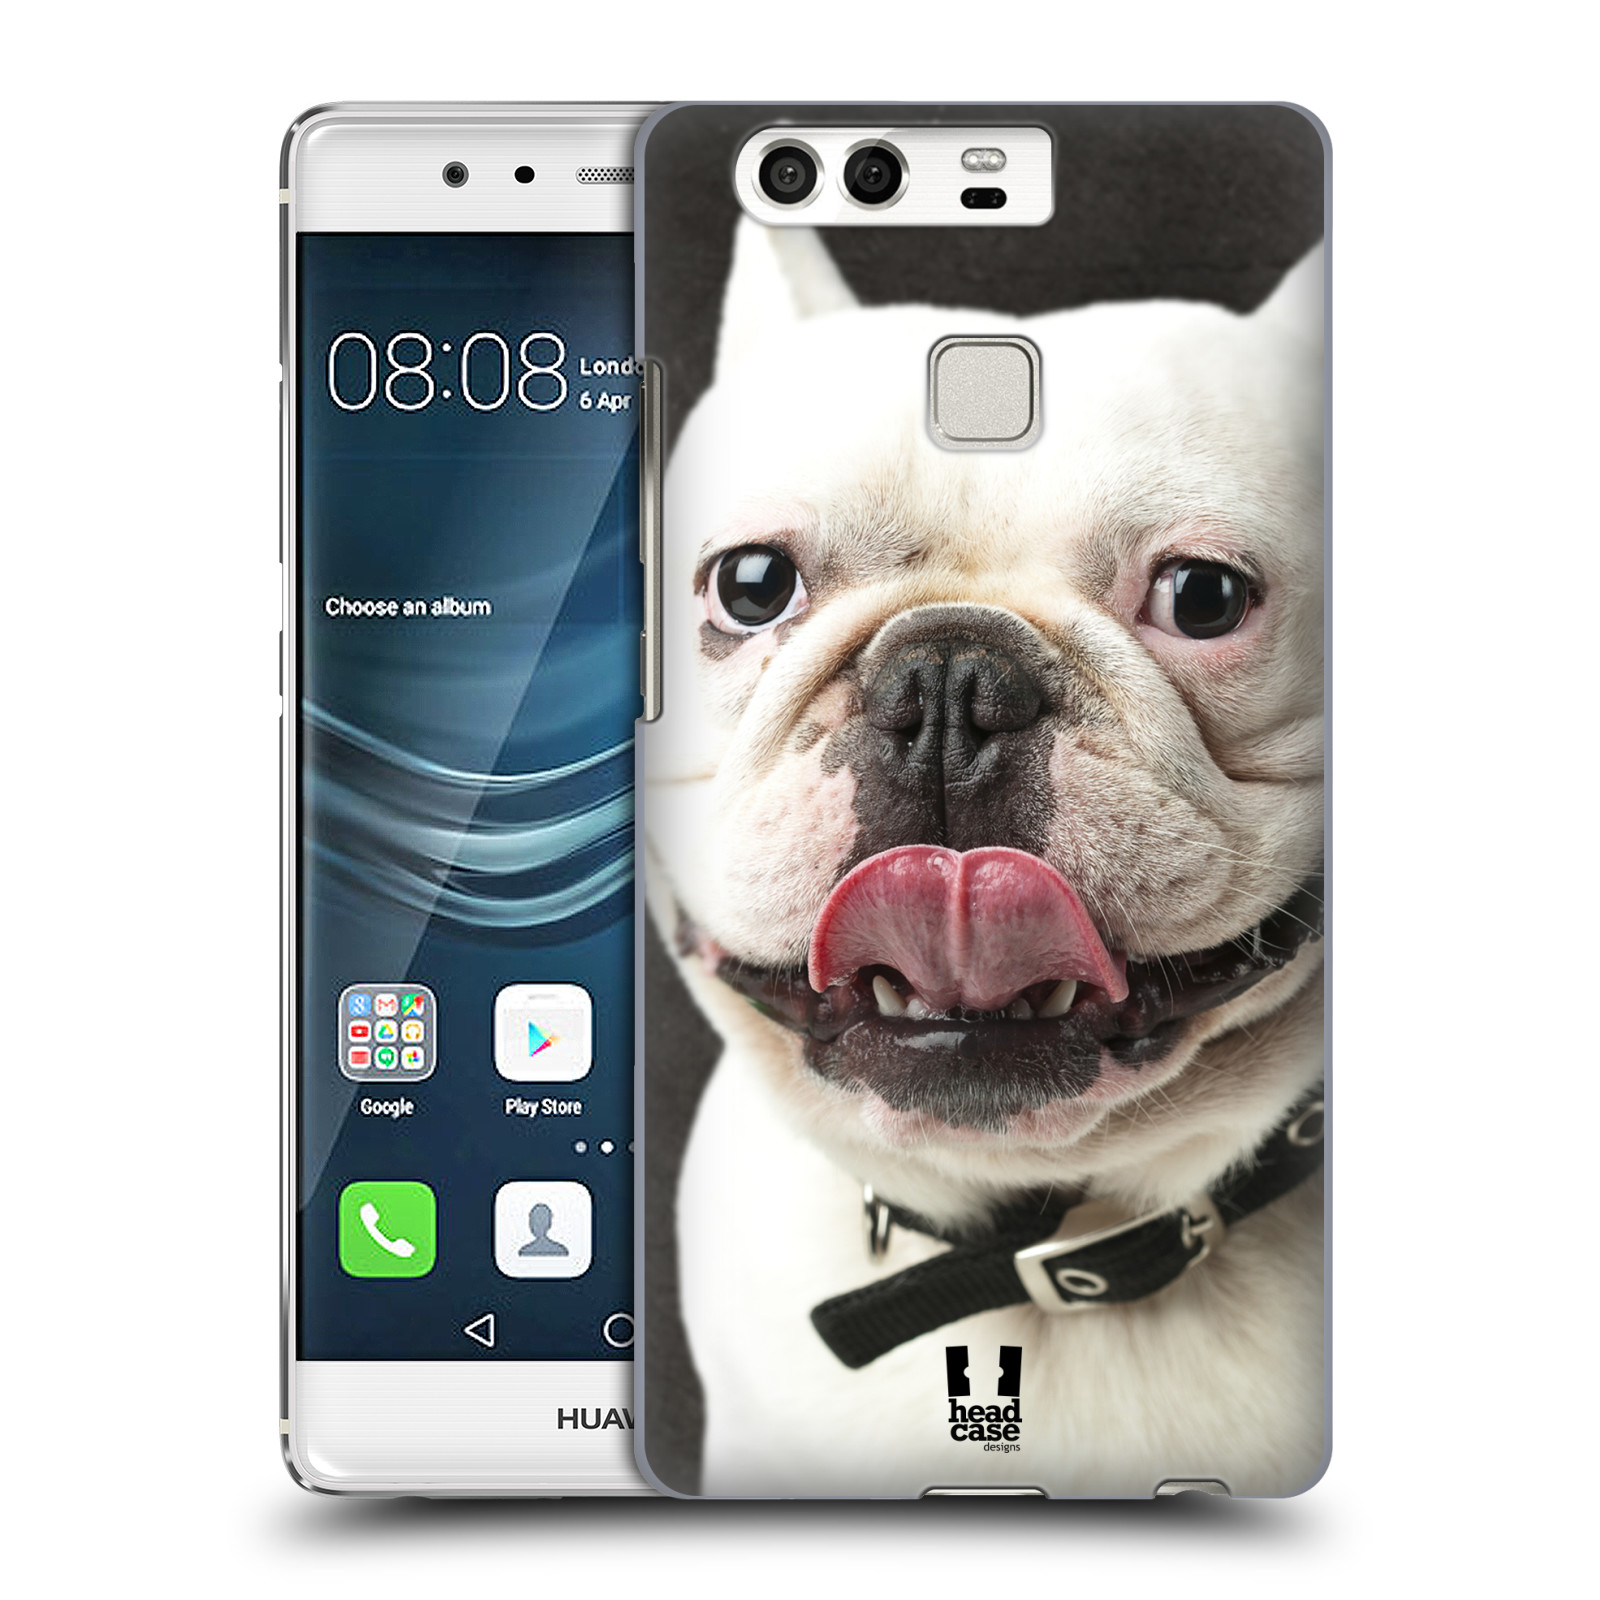 HEAD CASE plastový obal na mobil Huawei P9 / P9 DUAL SIM vzor Legrační zvířátka pejsek s vyplazeným jazykem BULDOK